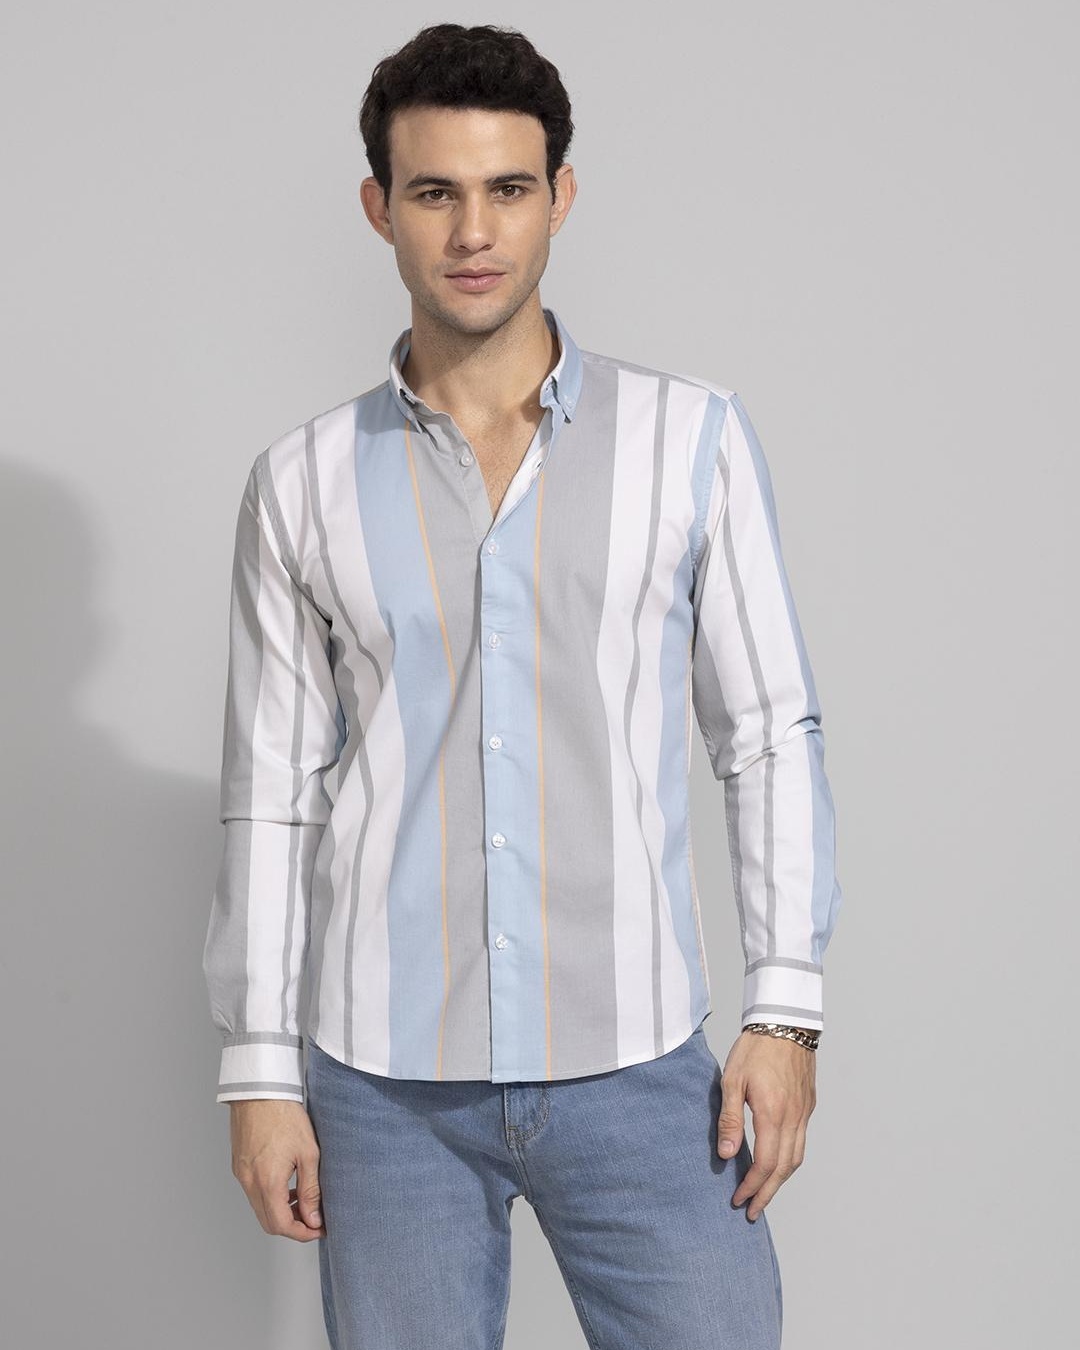 Buy Men's White & Grey Striped Slim Fit Shirt for Men White Online at ...